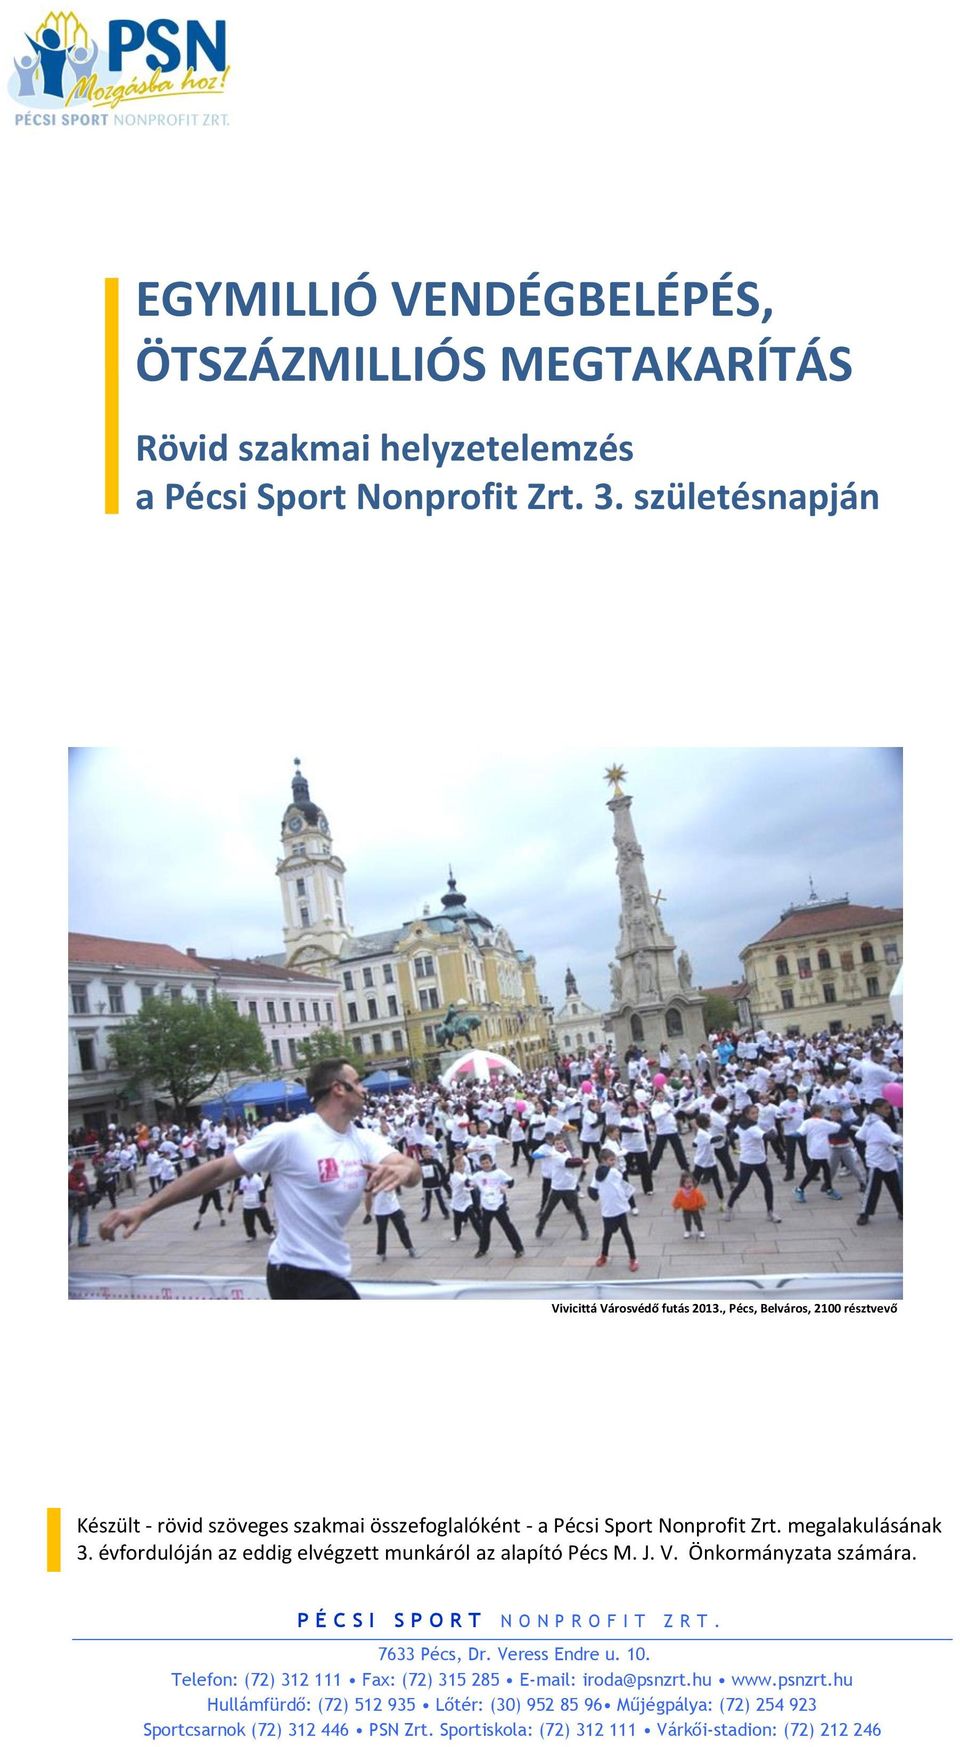 , Pécs, Belváros, 2100 résztvevő Készült - rövid szöveges szakmai összefoglalóként - a Pécsi